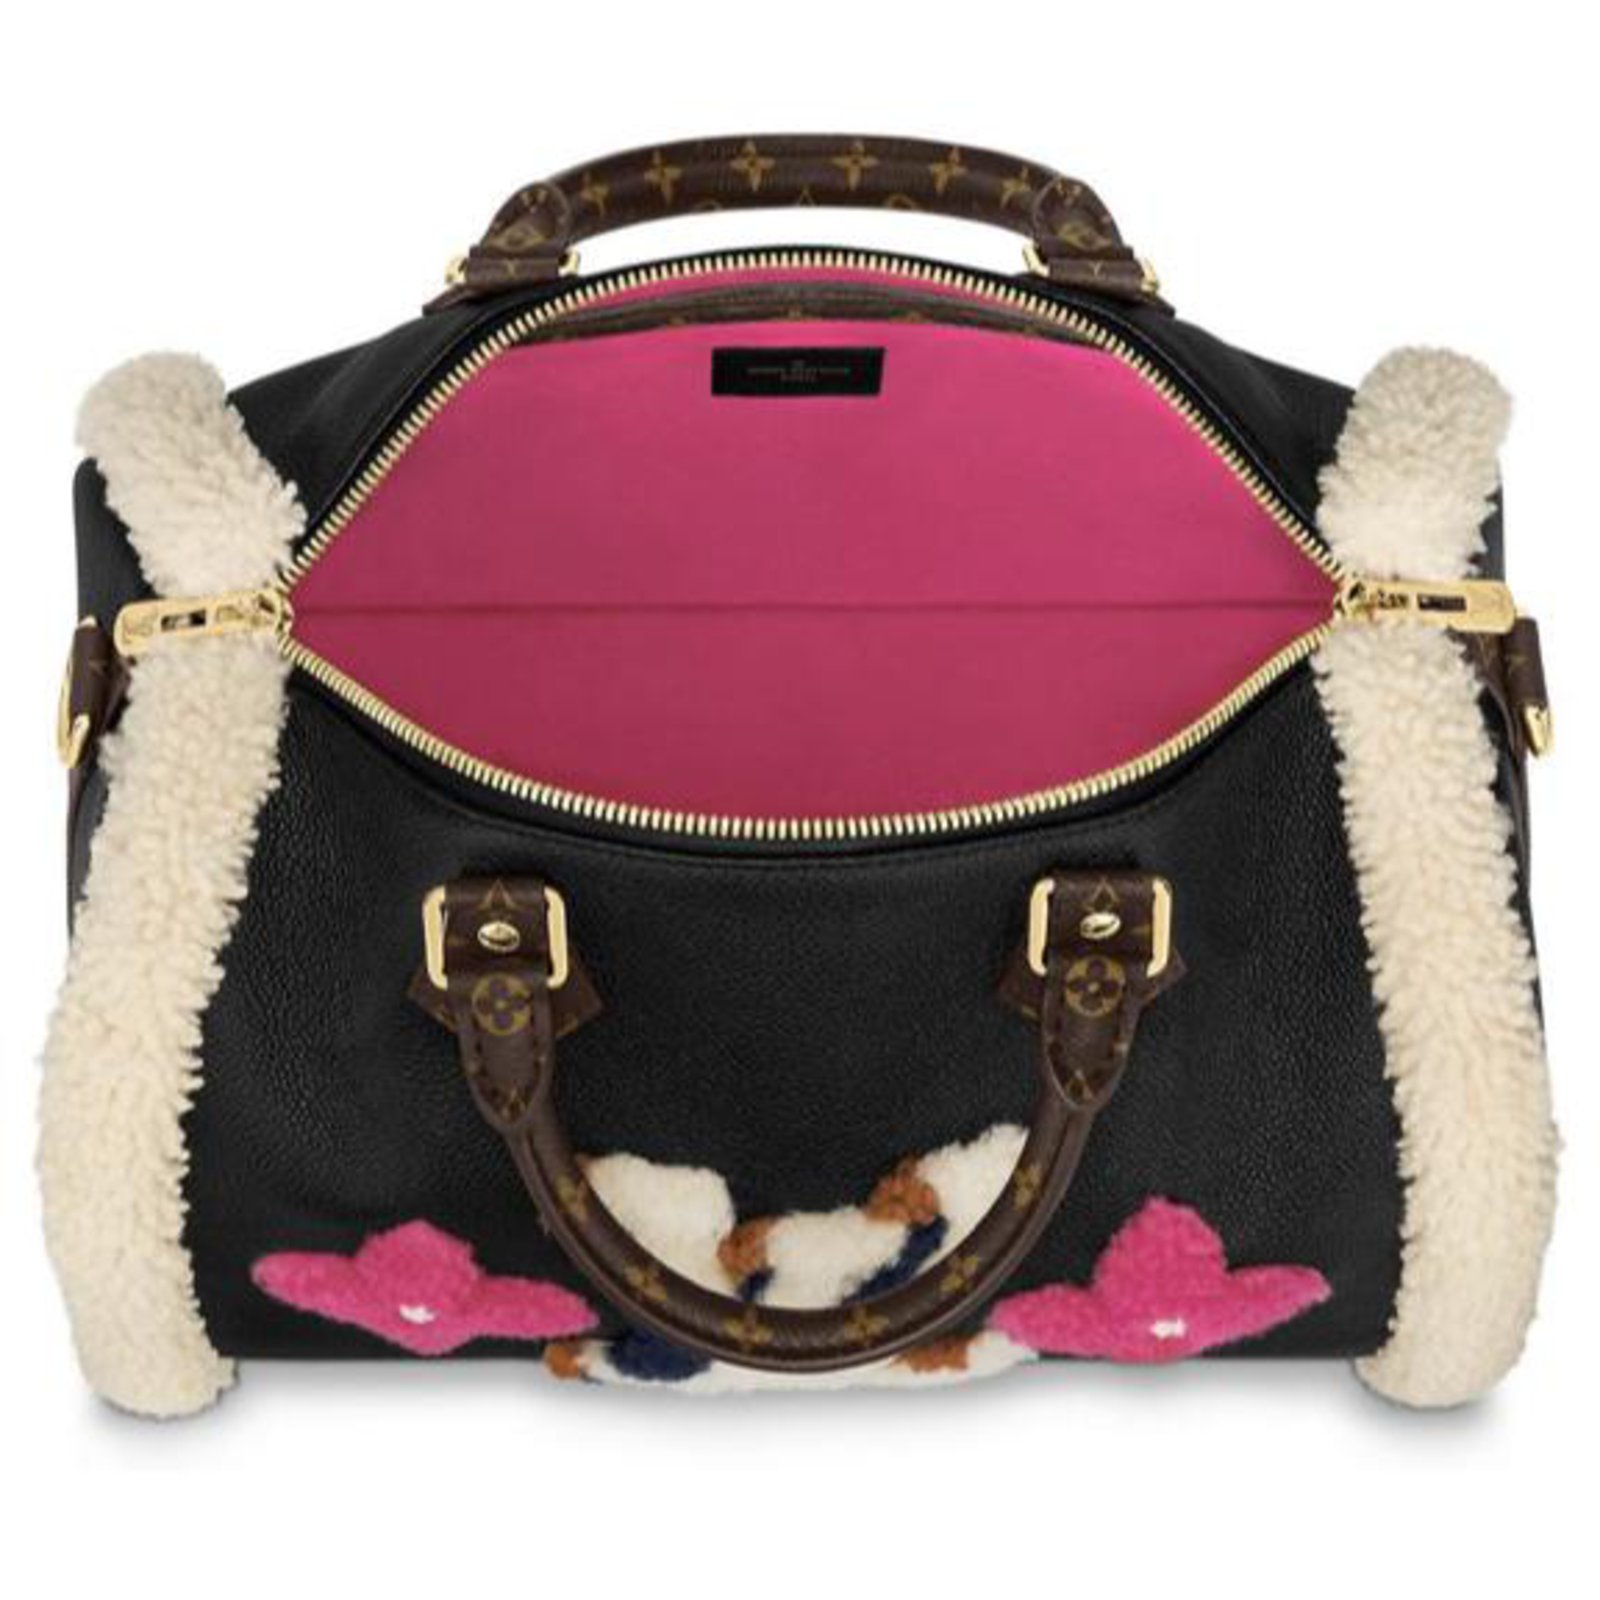 Super cute Louis Vuitton Teddy Bag! #preownedluxury